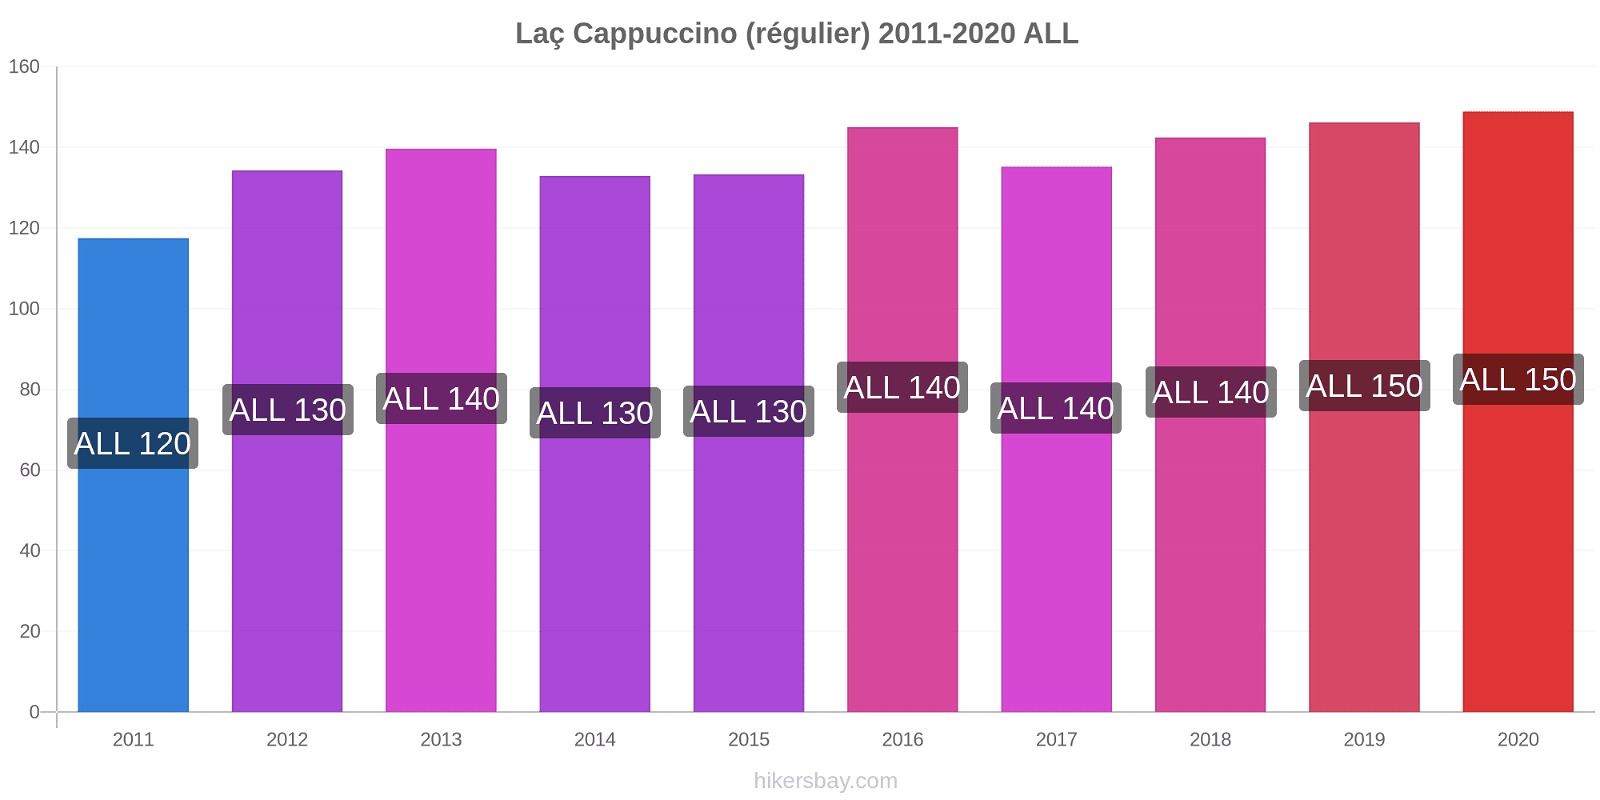 Laç changements de prix Cappuccino (régulier) hikersbay.com